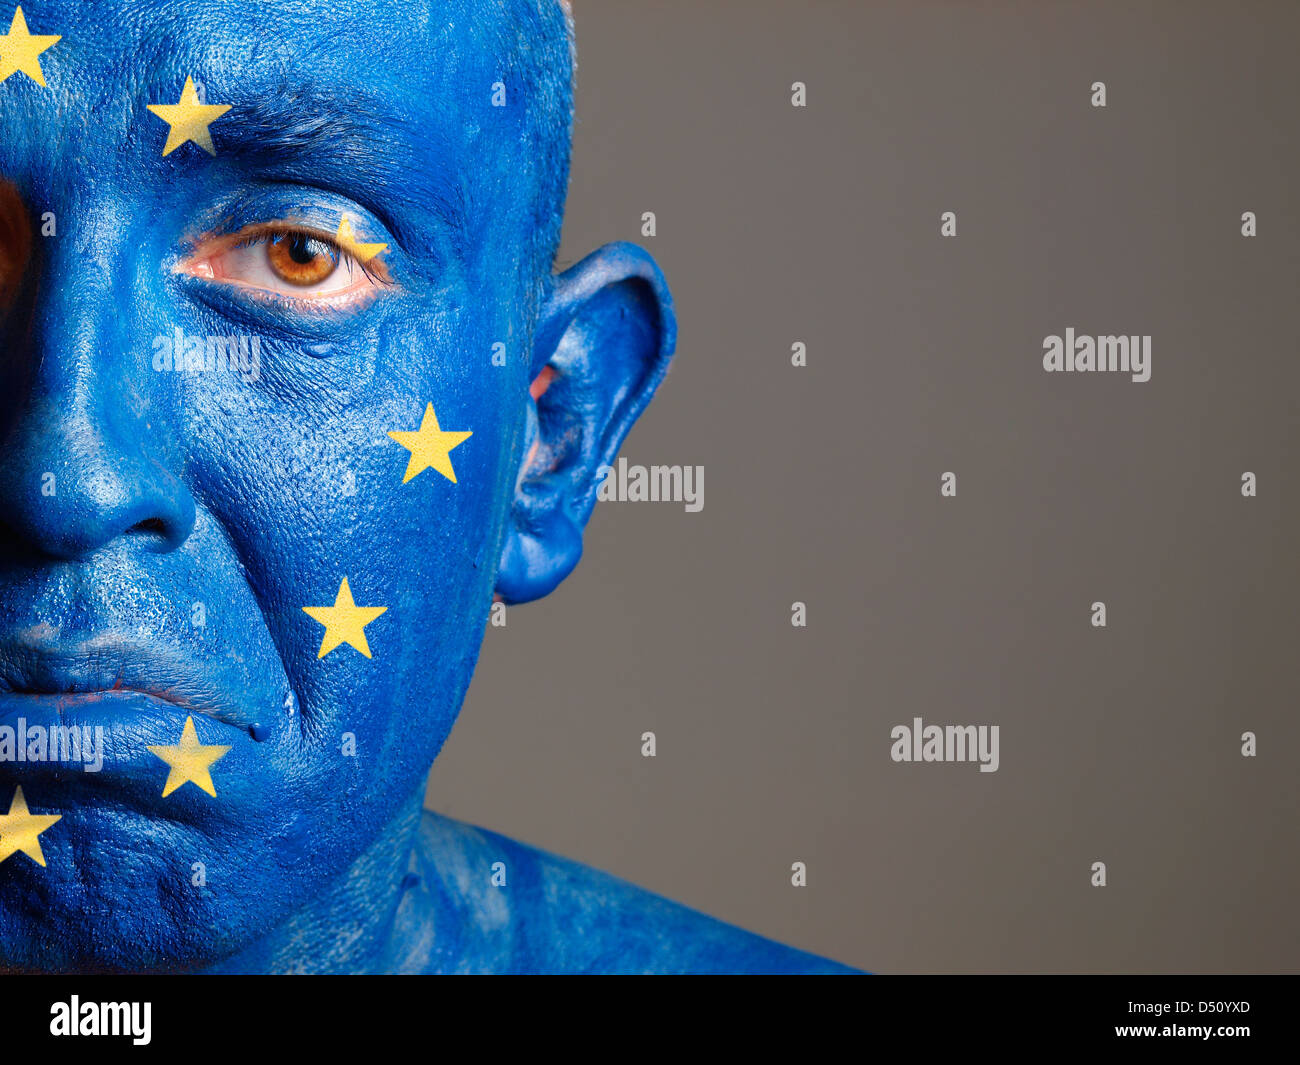 L'homme avec son visage peint avec le drapeau de l'Union européenne. L'homme est triste et composition photographique ne laisse que la moitié de la f Banque D'Images